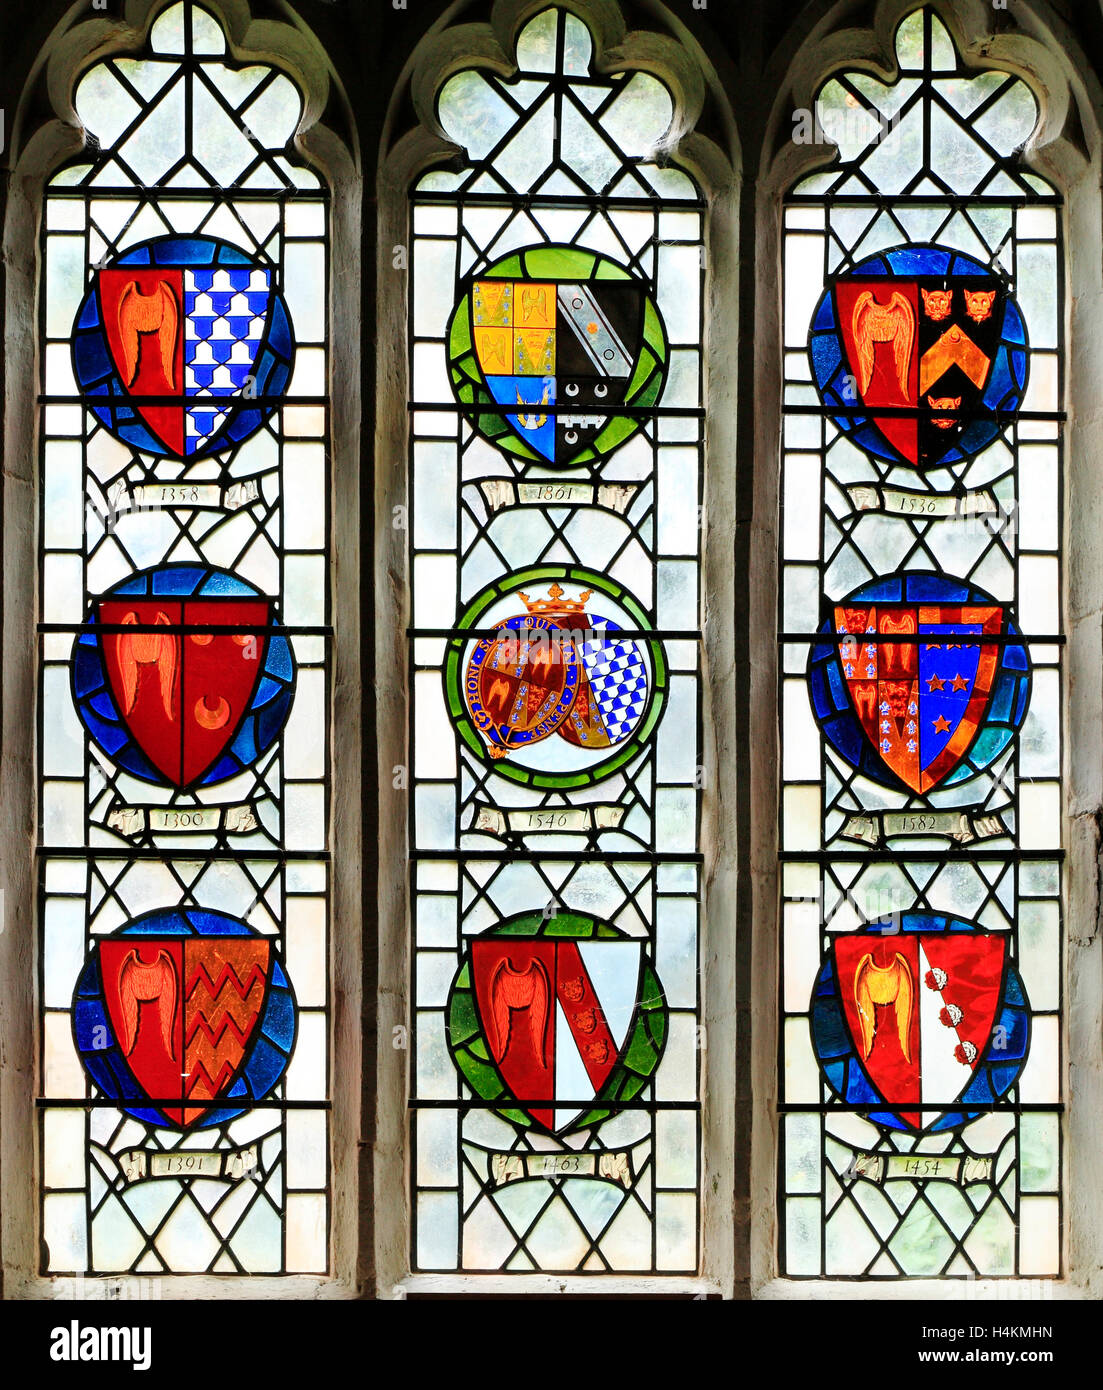 Stanhoe, Norfolk, diverses branches de la famille Seymour à travers l'histoire, vitrail, héraldique, bouclier héraldique device Banque D'Images